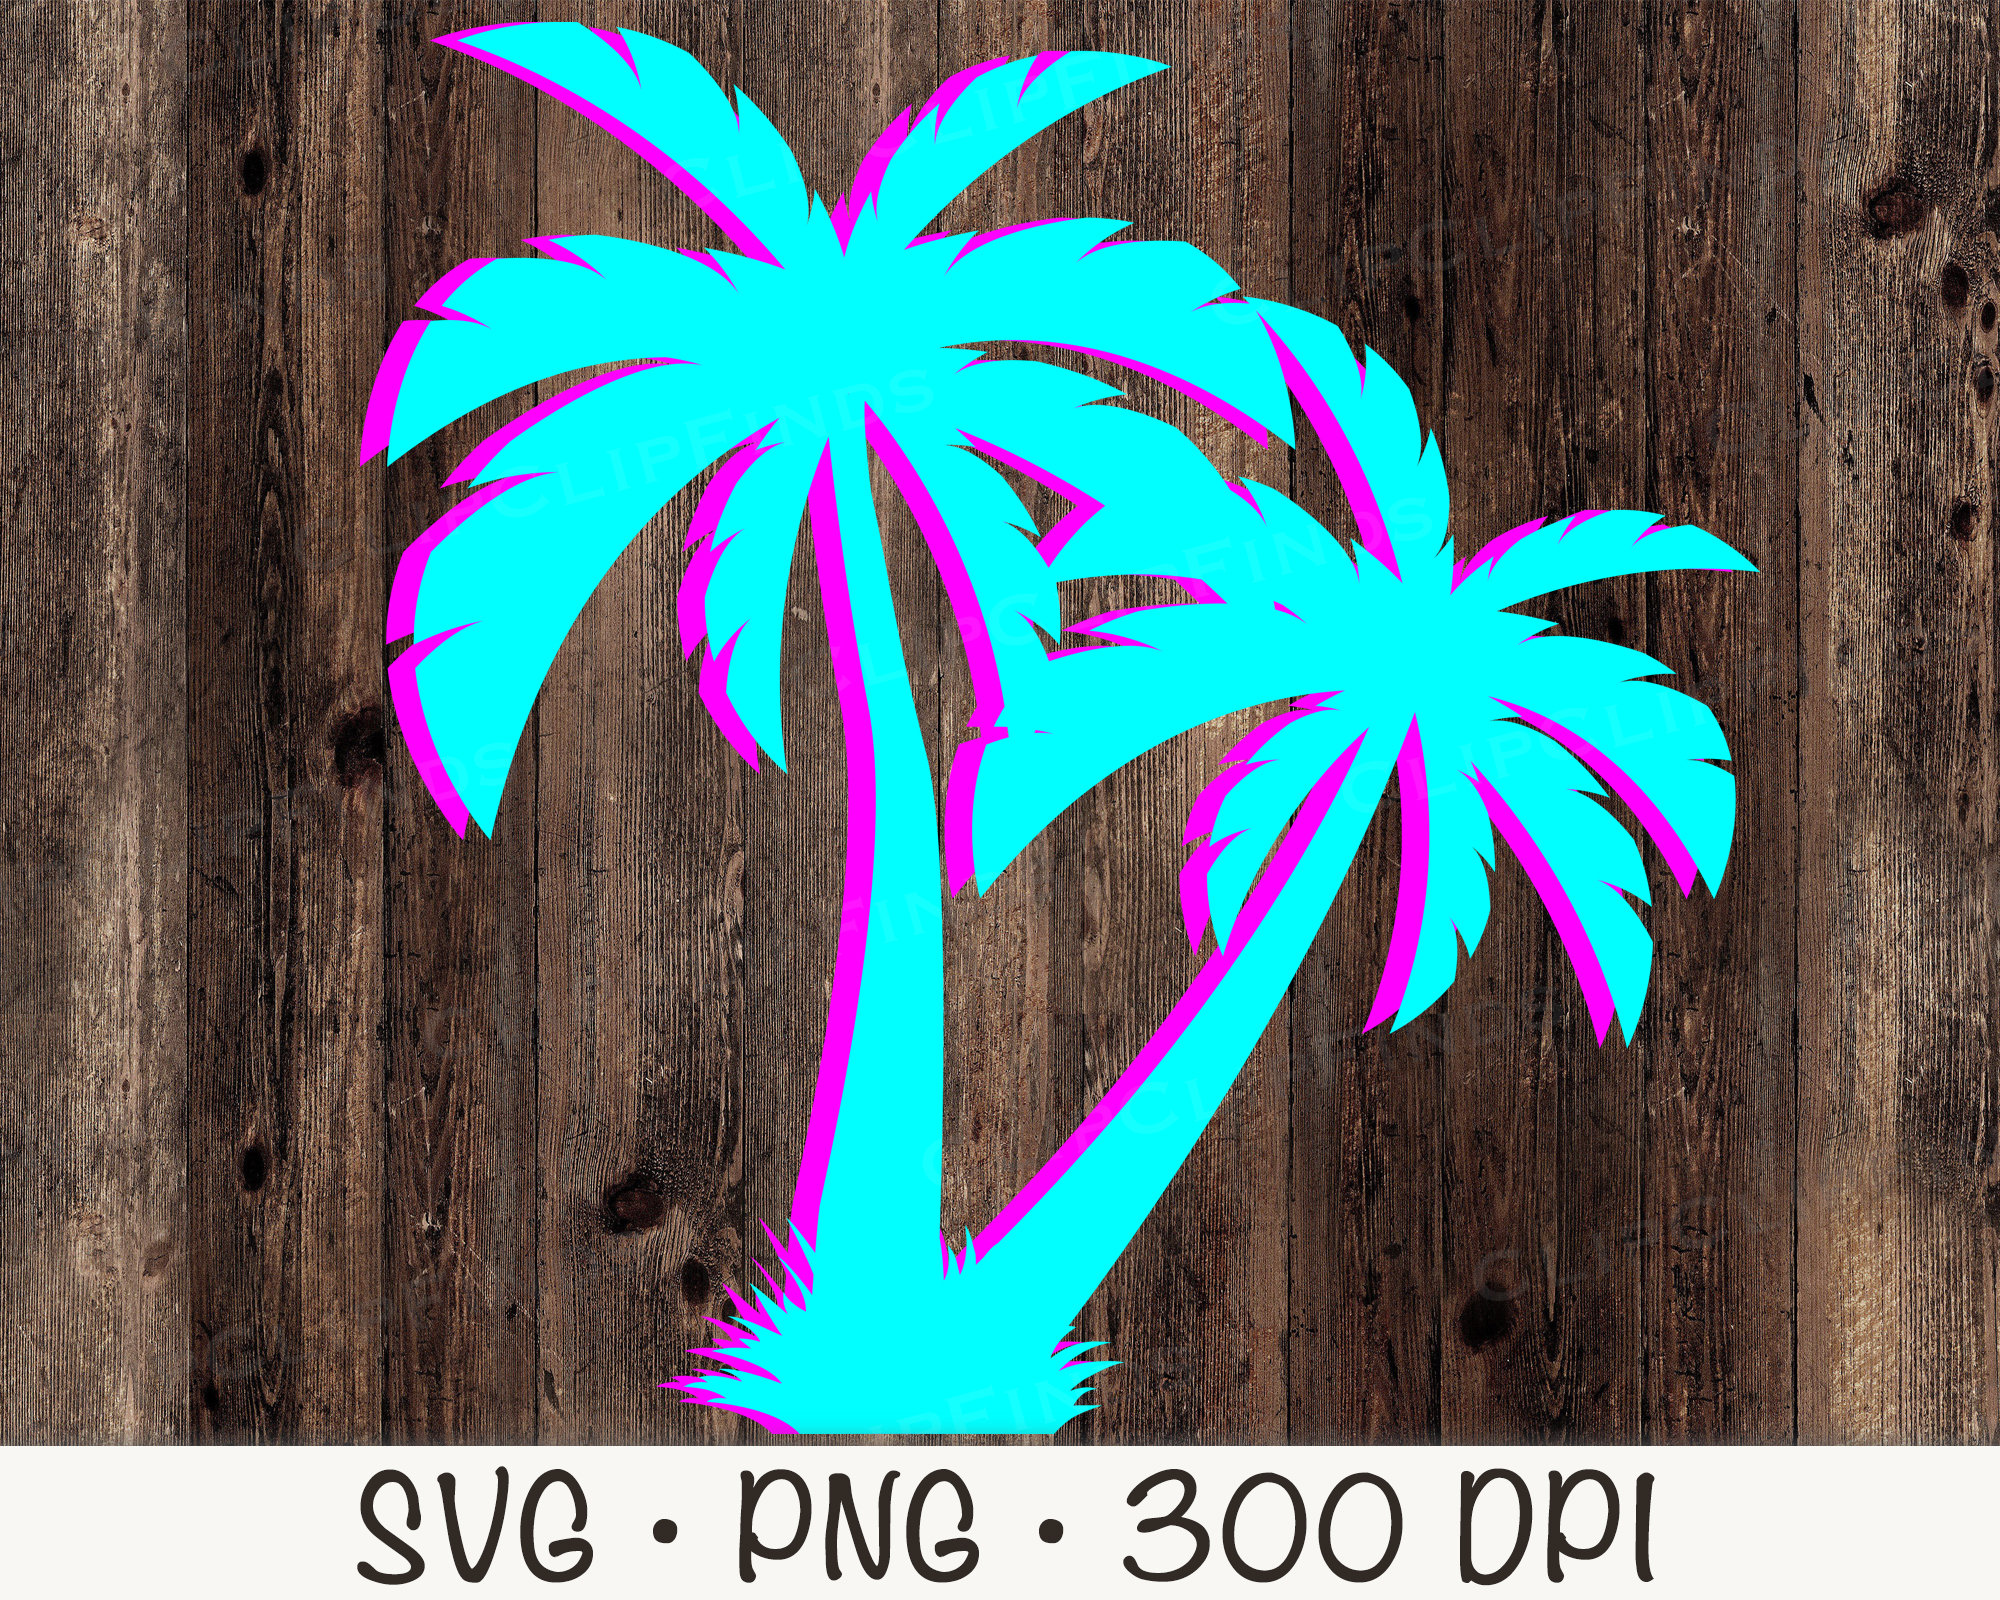 Miami Neon Colors New Retro Style Minimalism Sticker